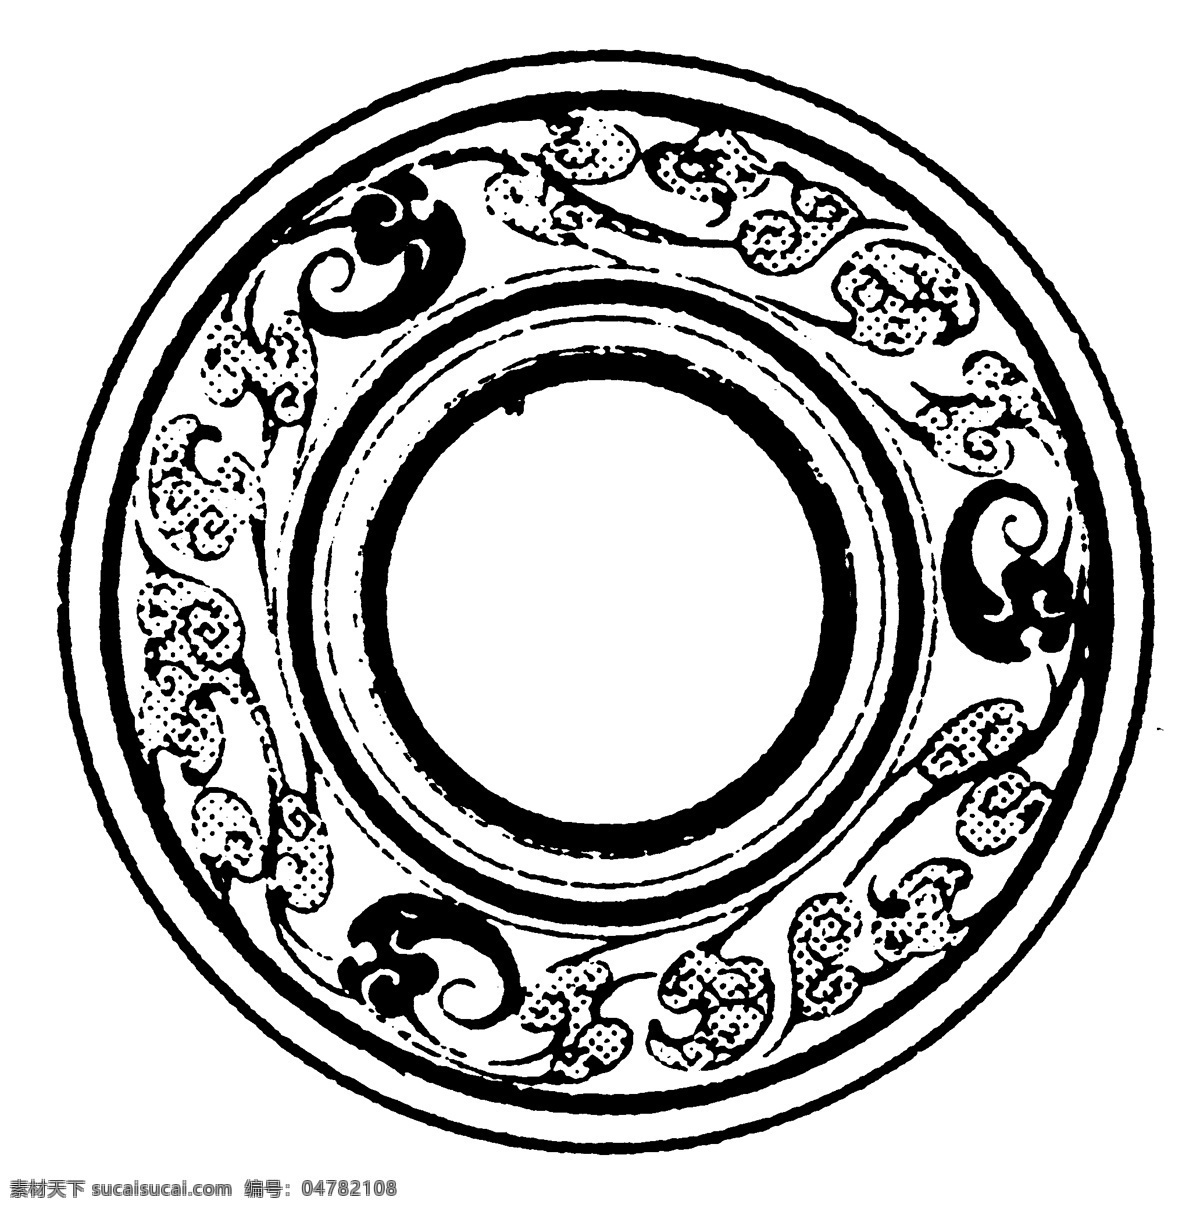 瓦当图案 秦汉时期图案 中国传统图案 图案107 图案 设计素材 瓦当纹饰 装饰图案 书画美术 白色